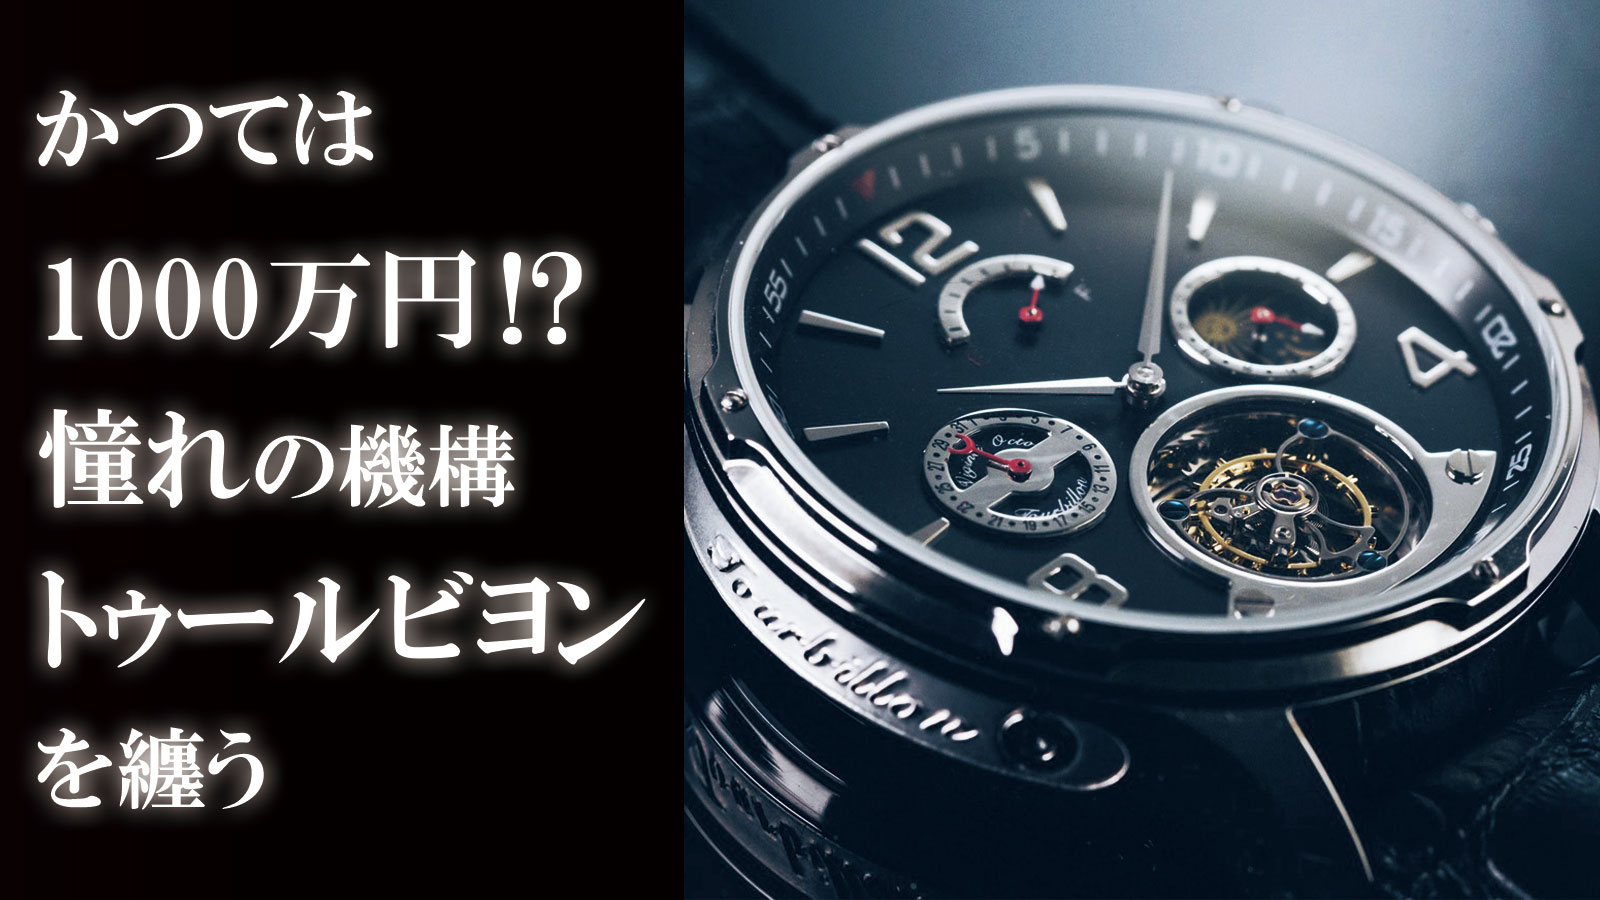 時計技術最高峰のトゥールビヨンを手の届く価格で。多機能機械式腕時計「VOトゥールビヨン」